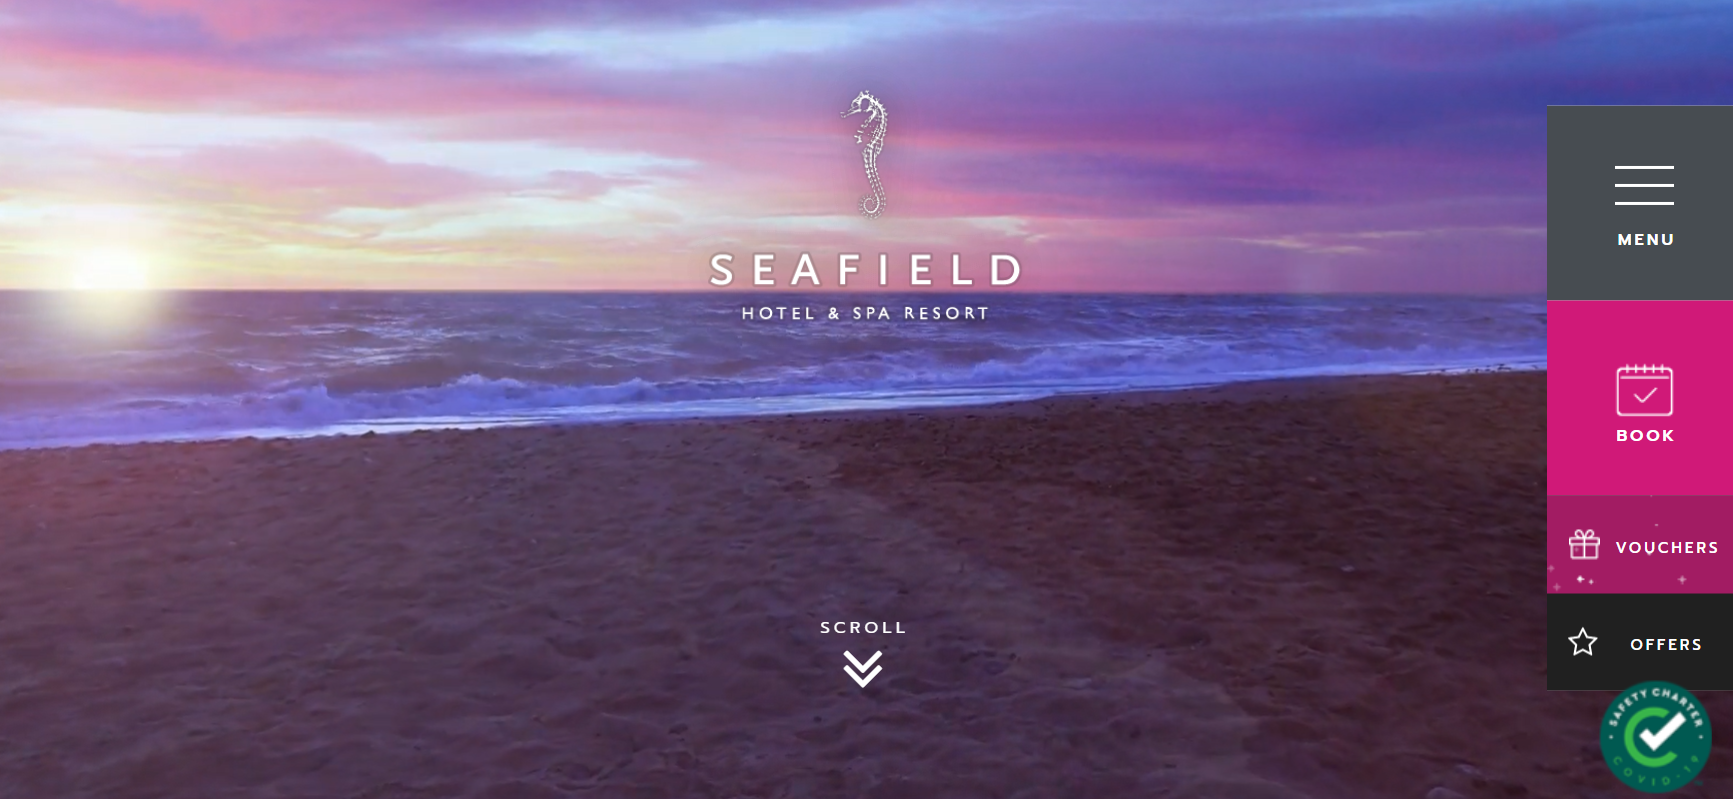 seafield hotel website